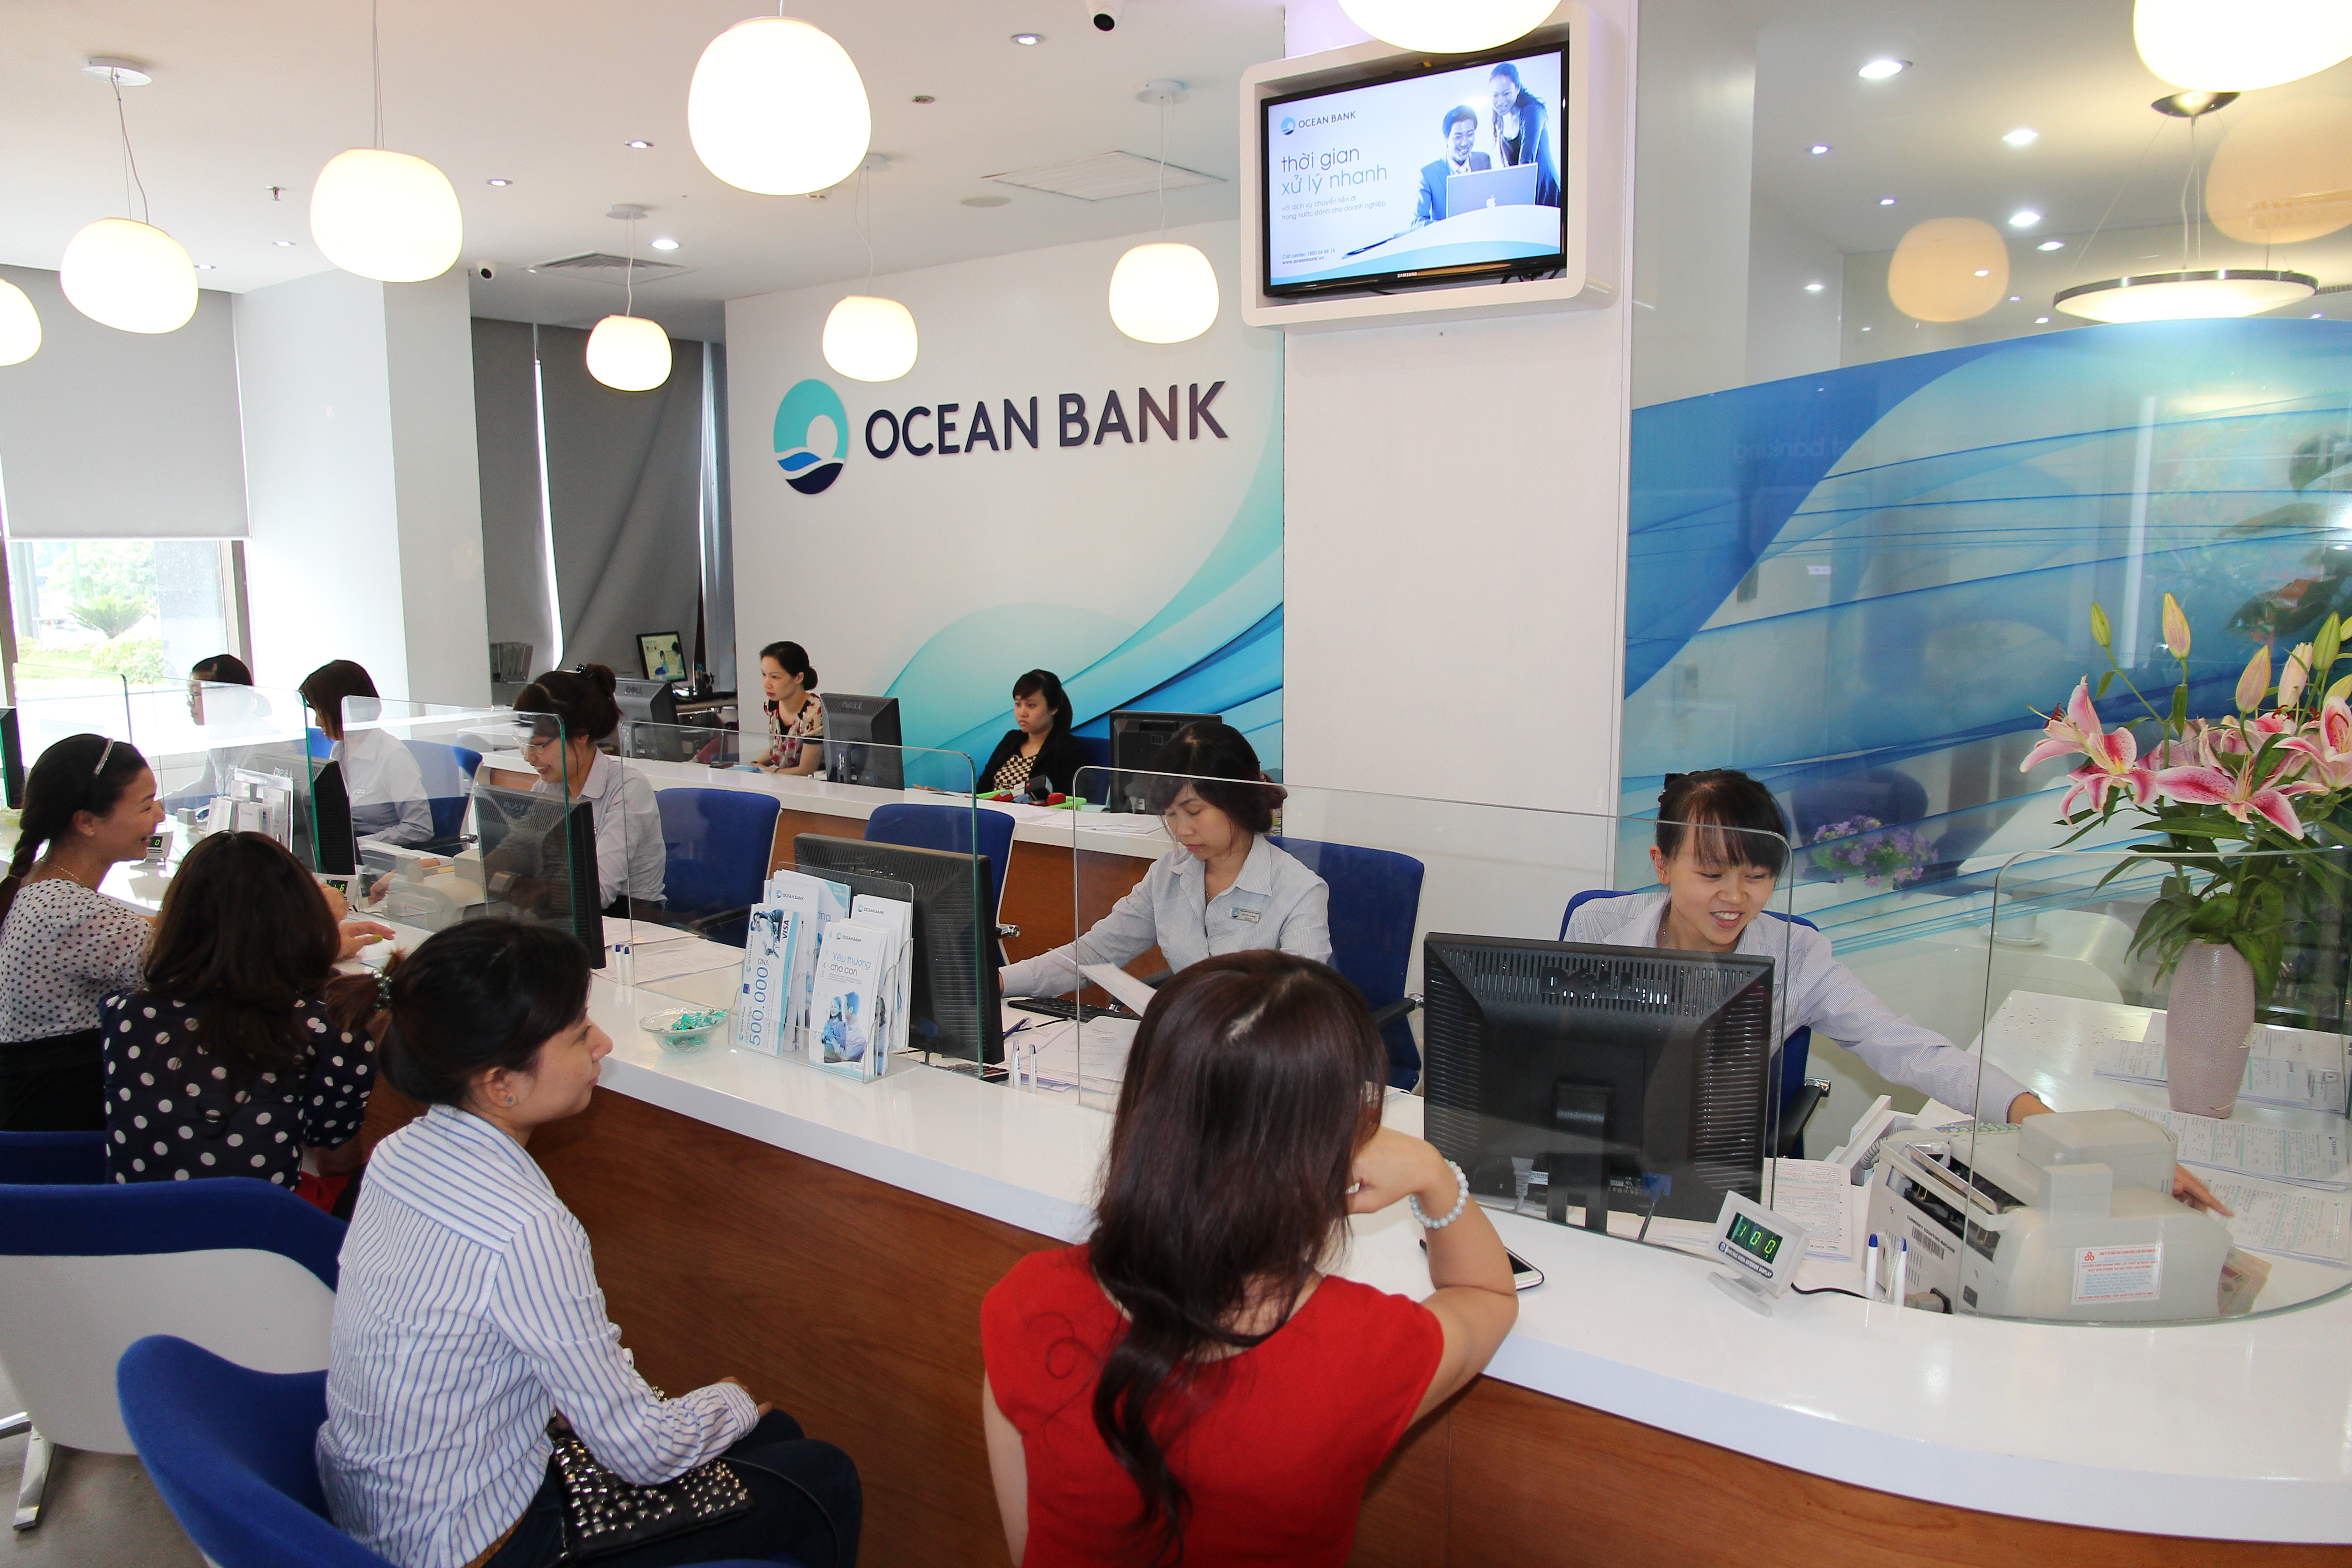 Mất 0 đồng, Ngân hàng Nhà nước mua trọn vẹn Oceanbank 